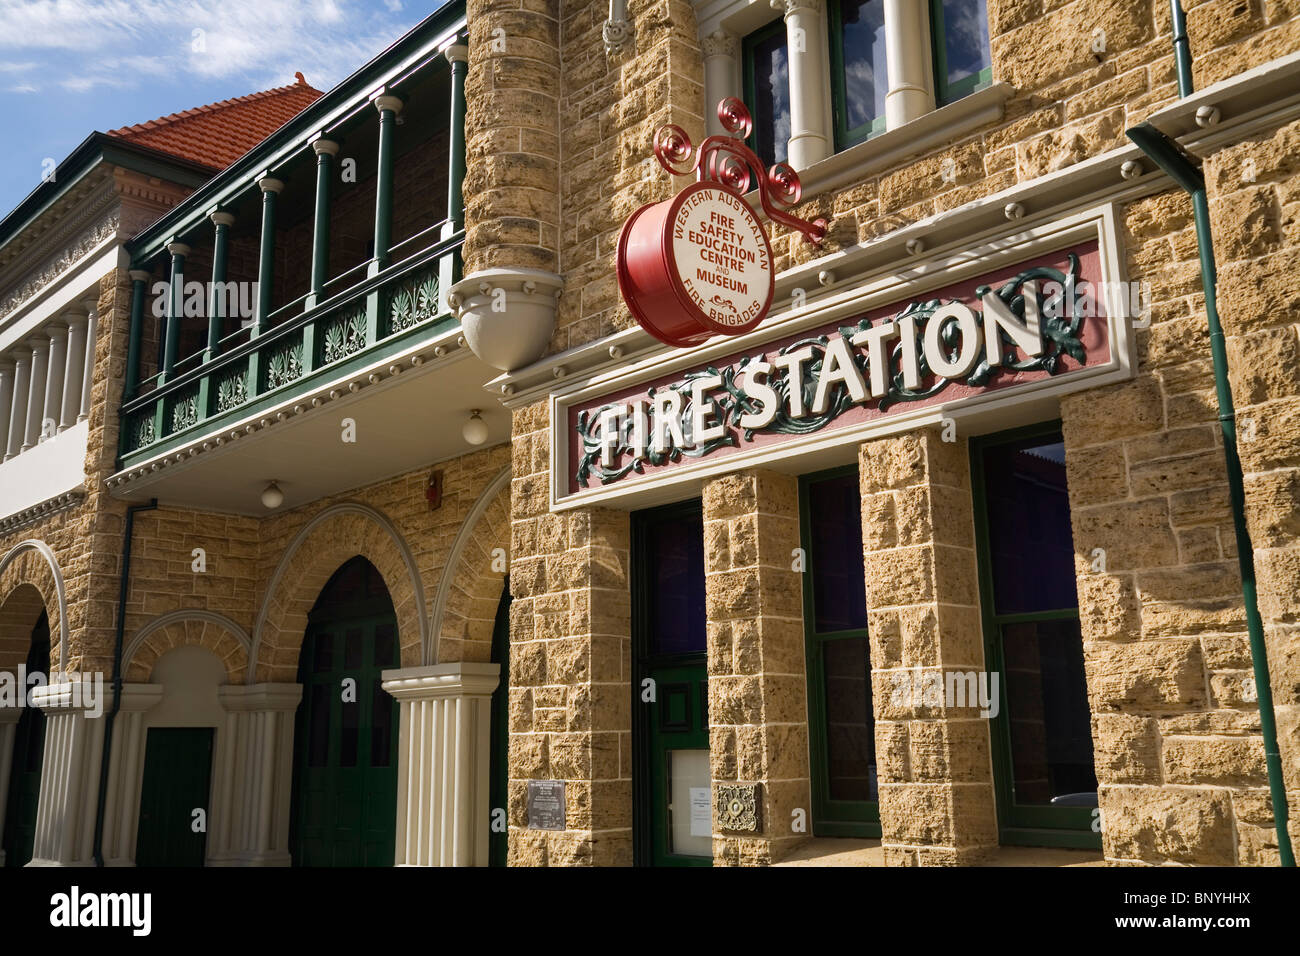 La sécurité incendie et de l'éducation Musée dans l'ancienne caserne de pompiers de Perth. Perth, Australie occidentale, Australie. Banque D'Images